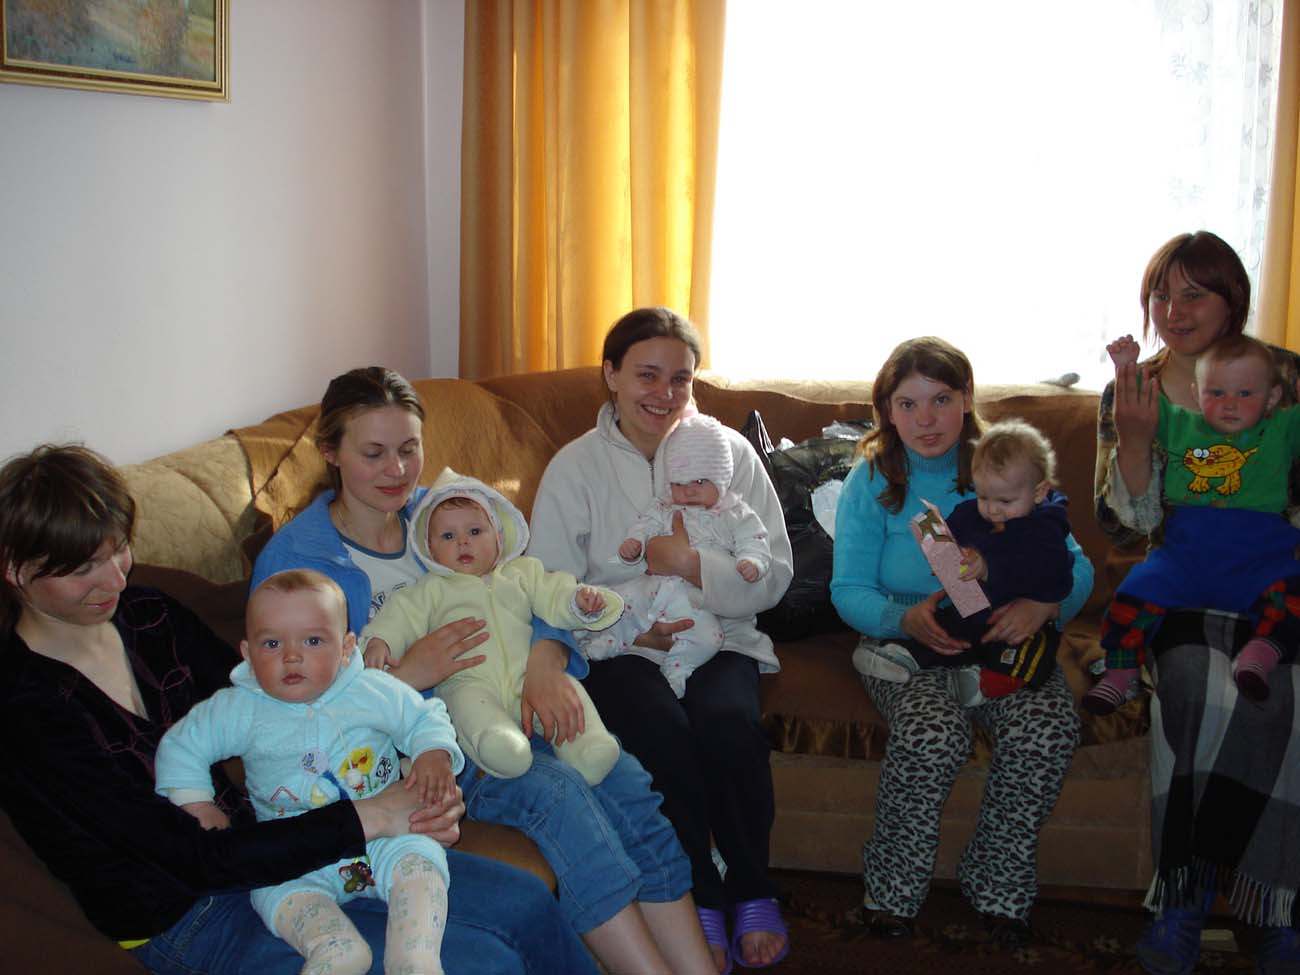 слева направо: Юля с Димой, Лена с Дашей, Оля и Елисей, Наташа и Богдан, Яна и Саша.